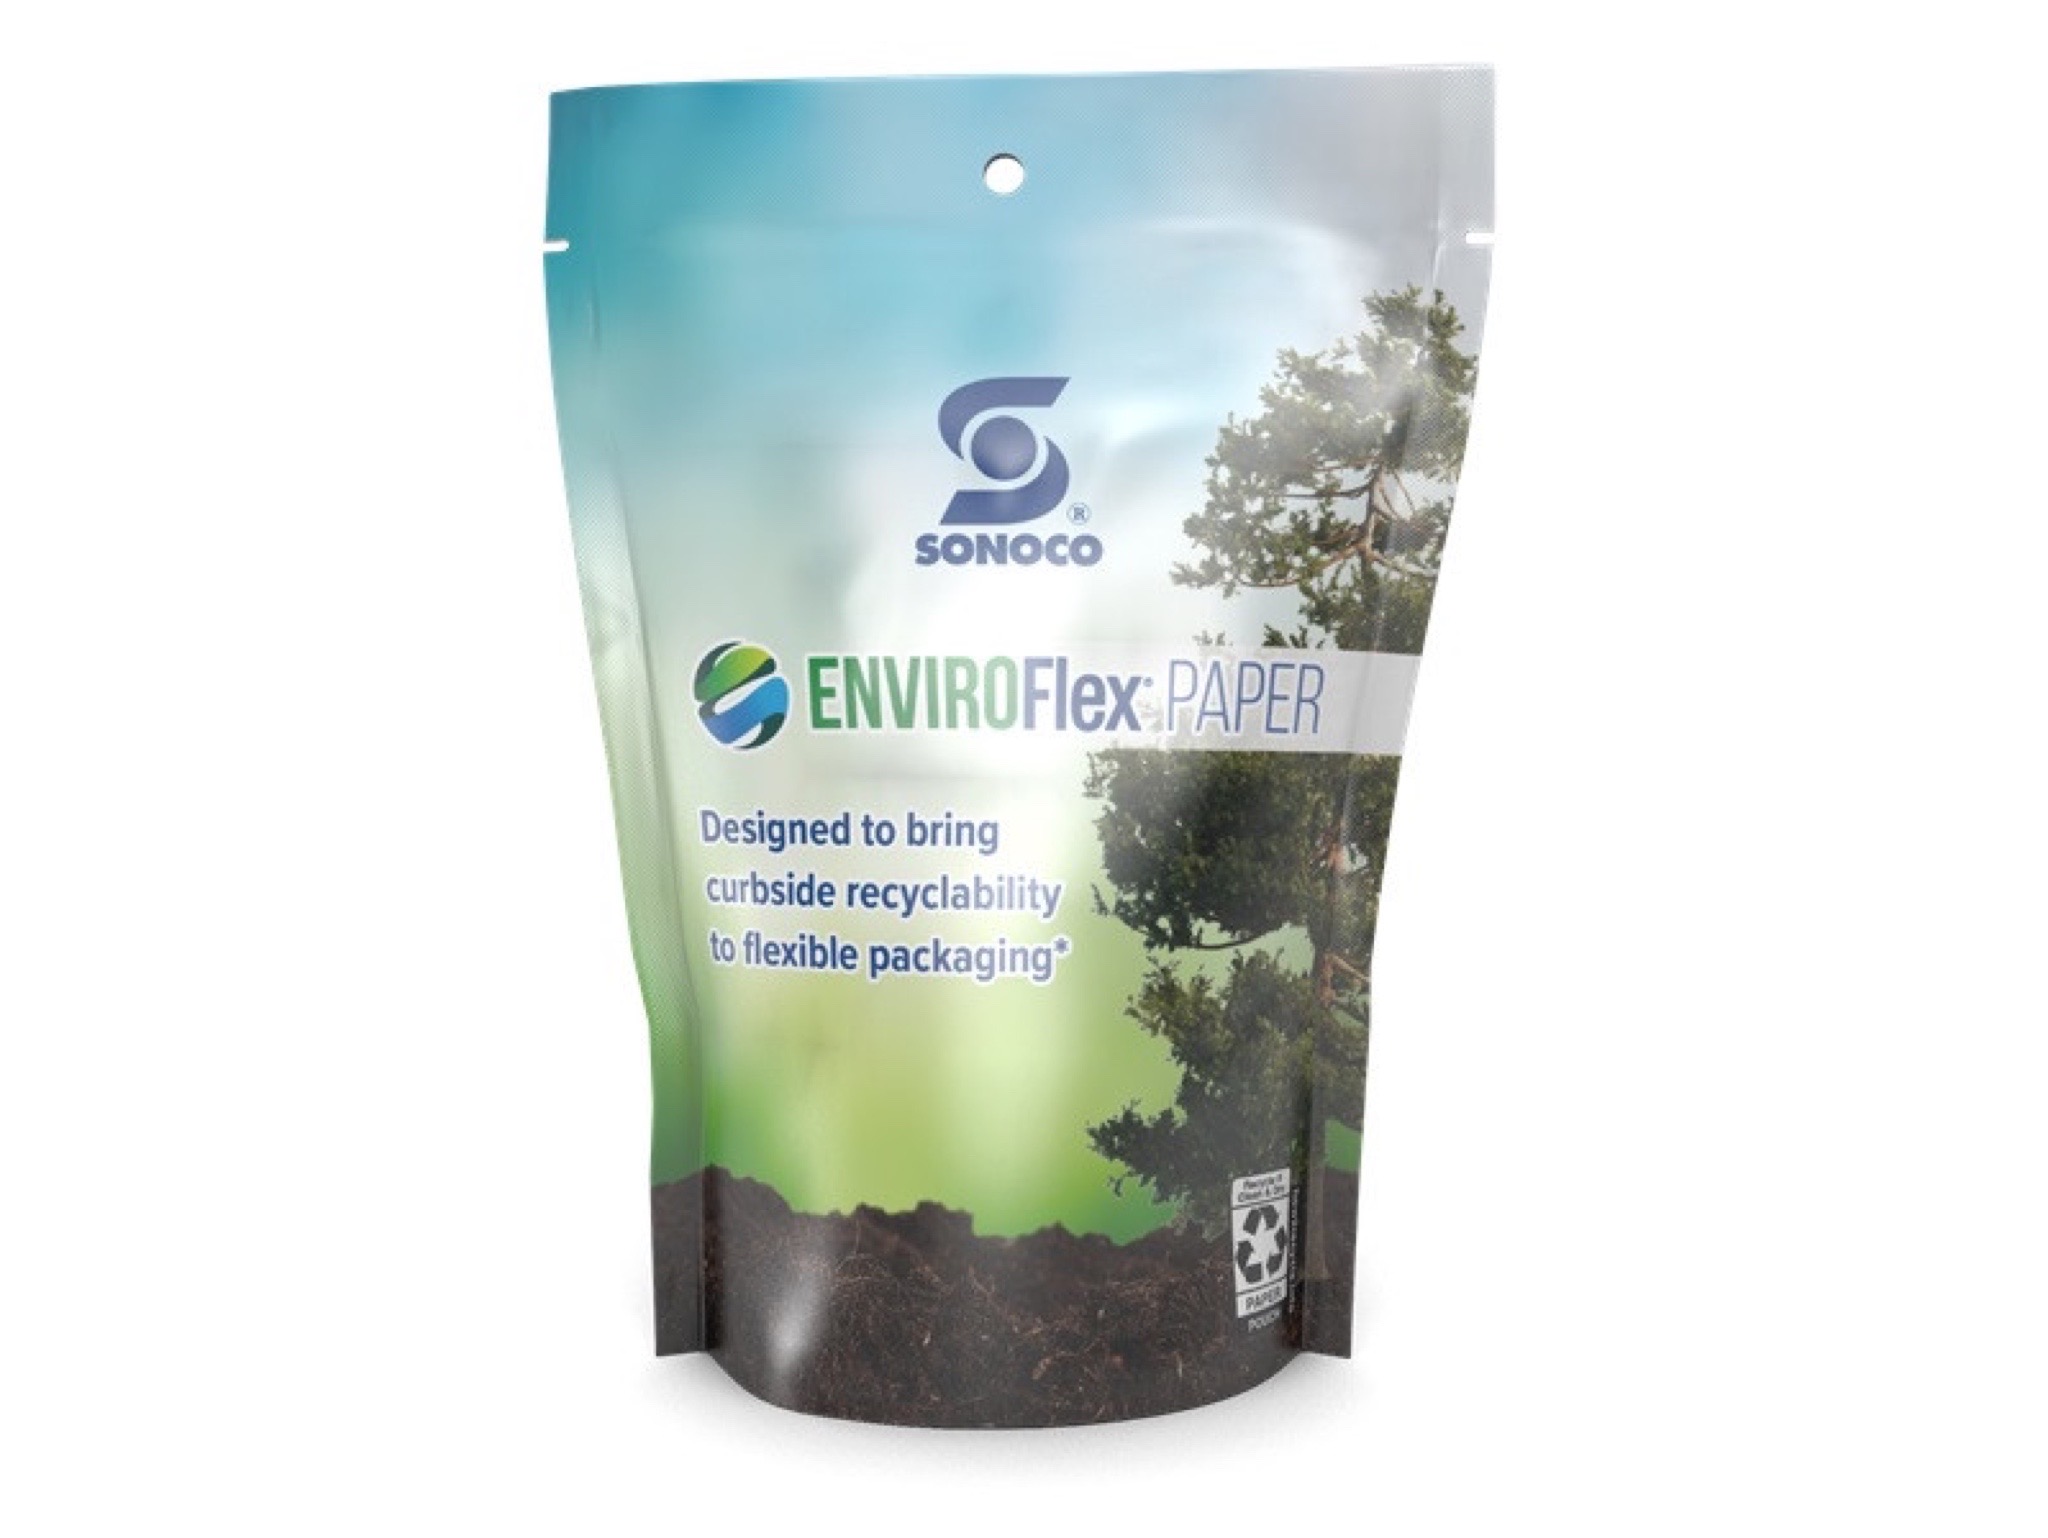 Sonoco презентовала высокобарьерную экологичную бумагу EnviroFlex